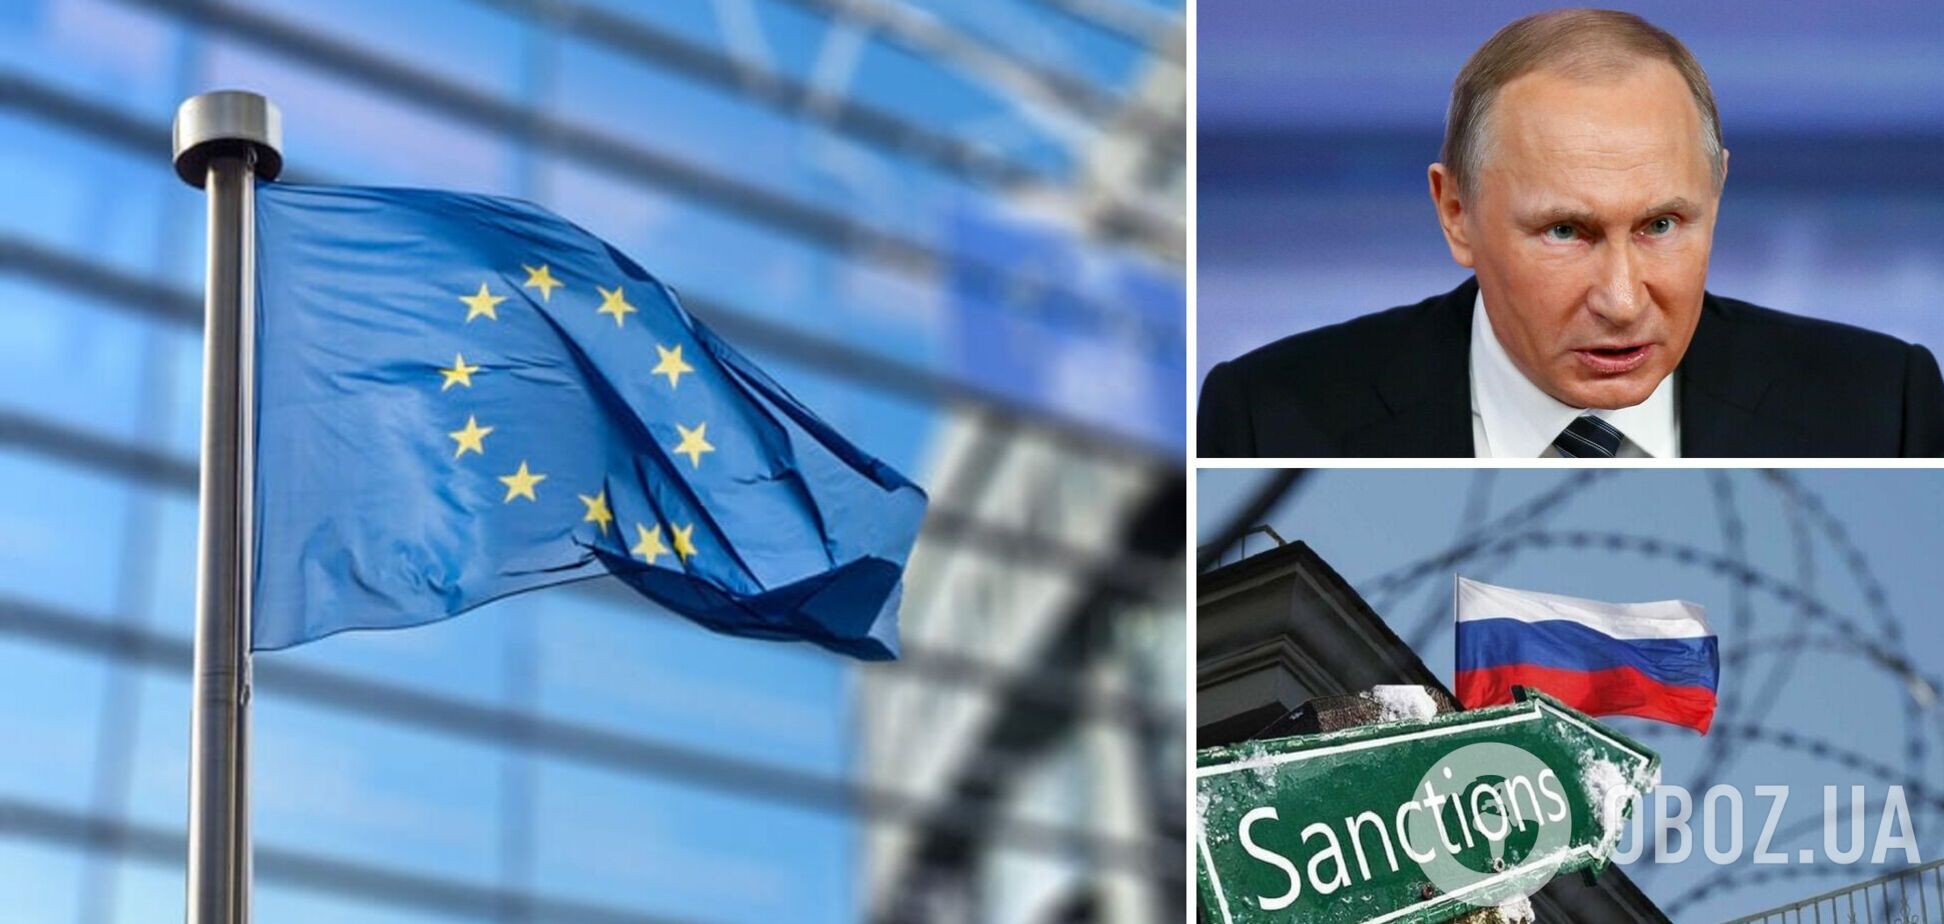 ЕС хочет обнародовать новый пакет санкций против РФ в ближайшие недели